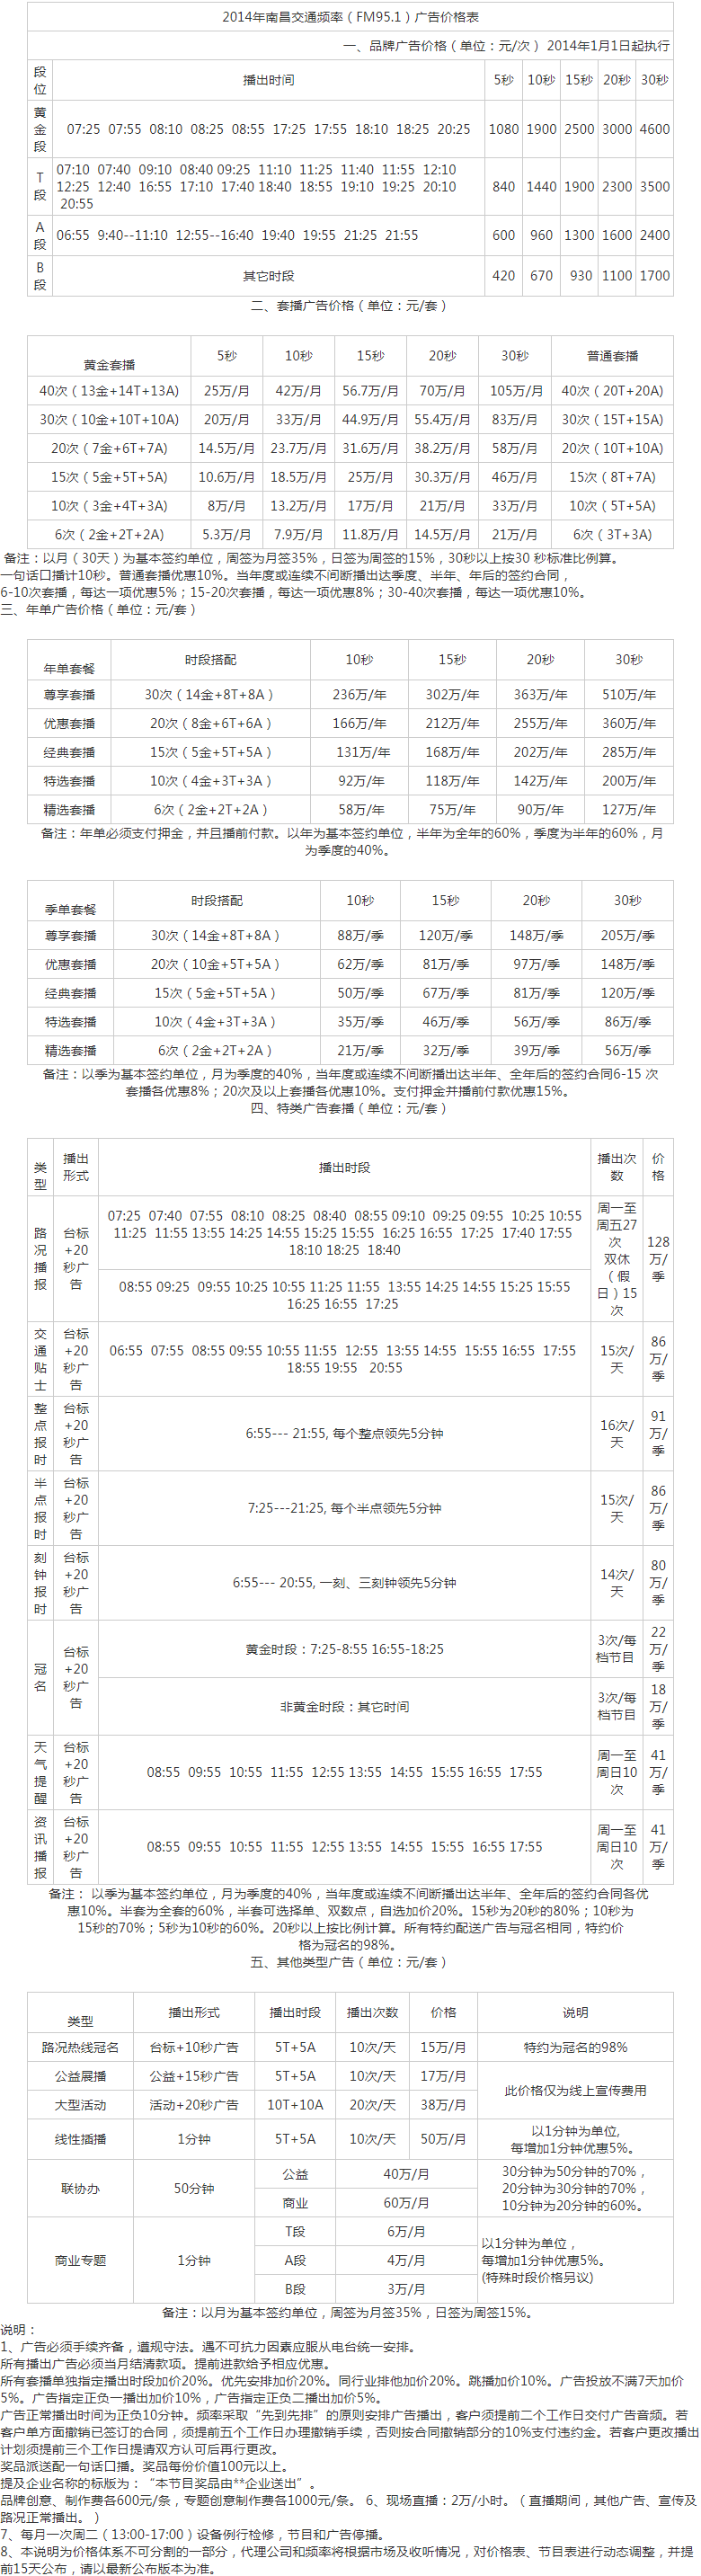 2014南昌人民广播电台交通音乐之声 FM95.1广告报价表.png